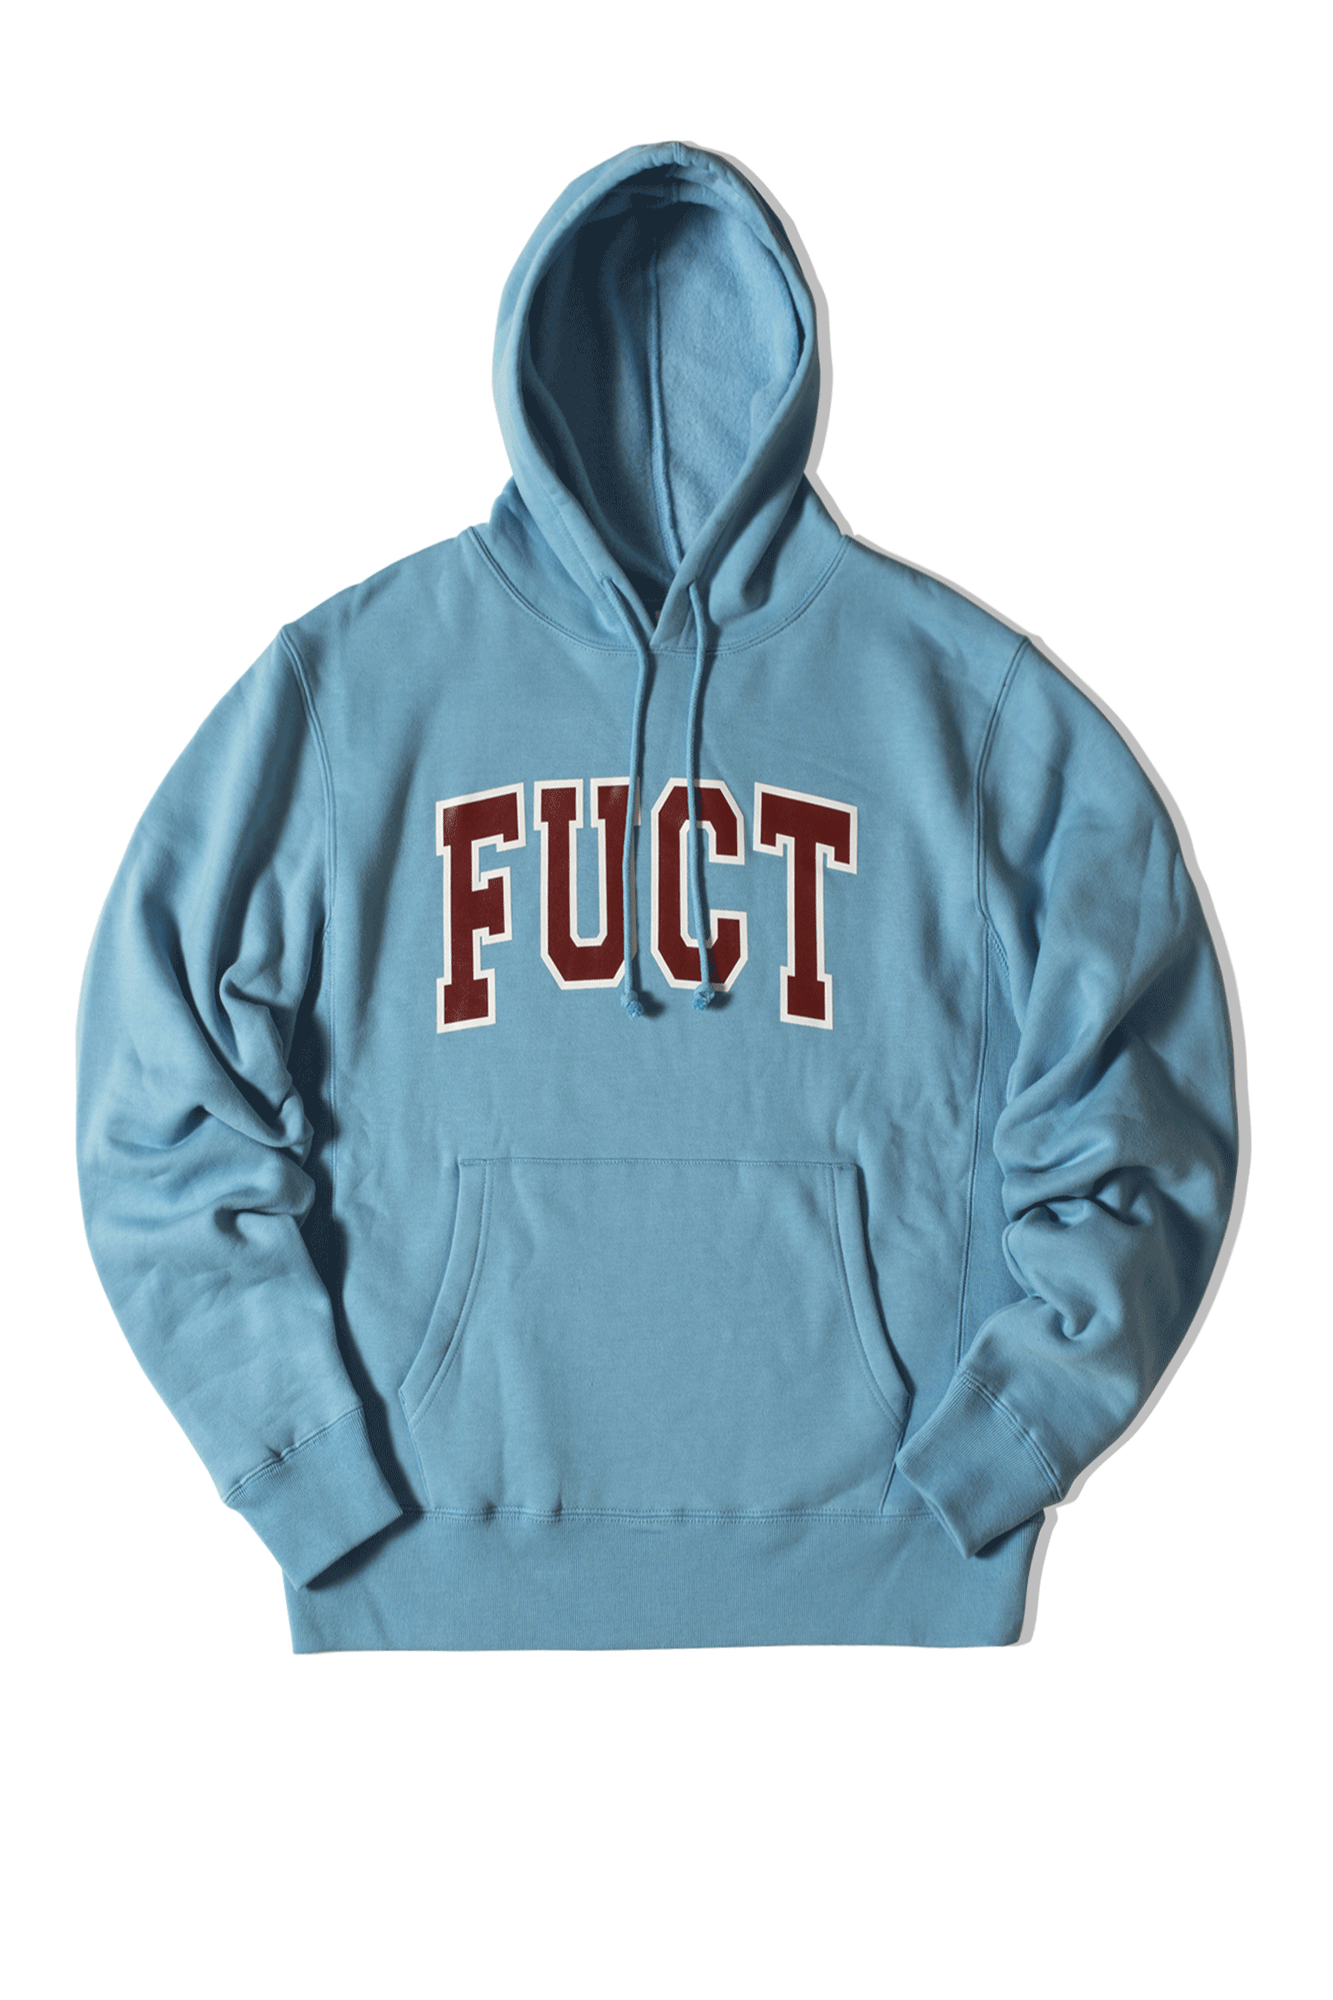 Fuct Felpe con cappuccio ACADEMY Hooded sweatshirt Blu FSU19007#000#BLUE#XXL - One Block Down